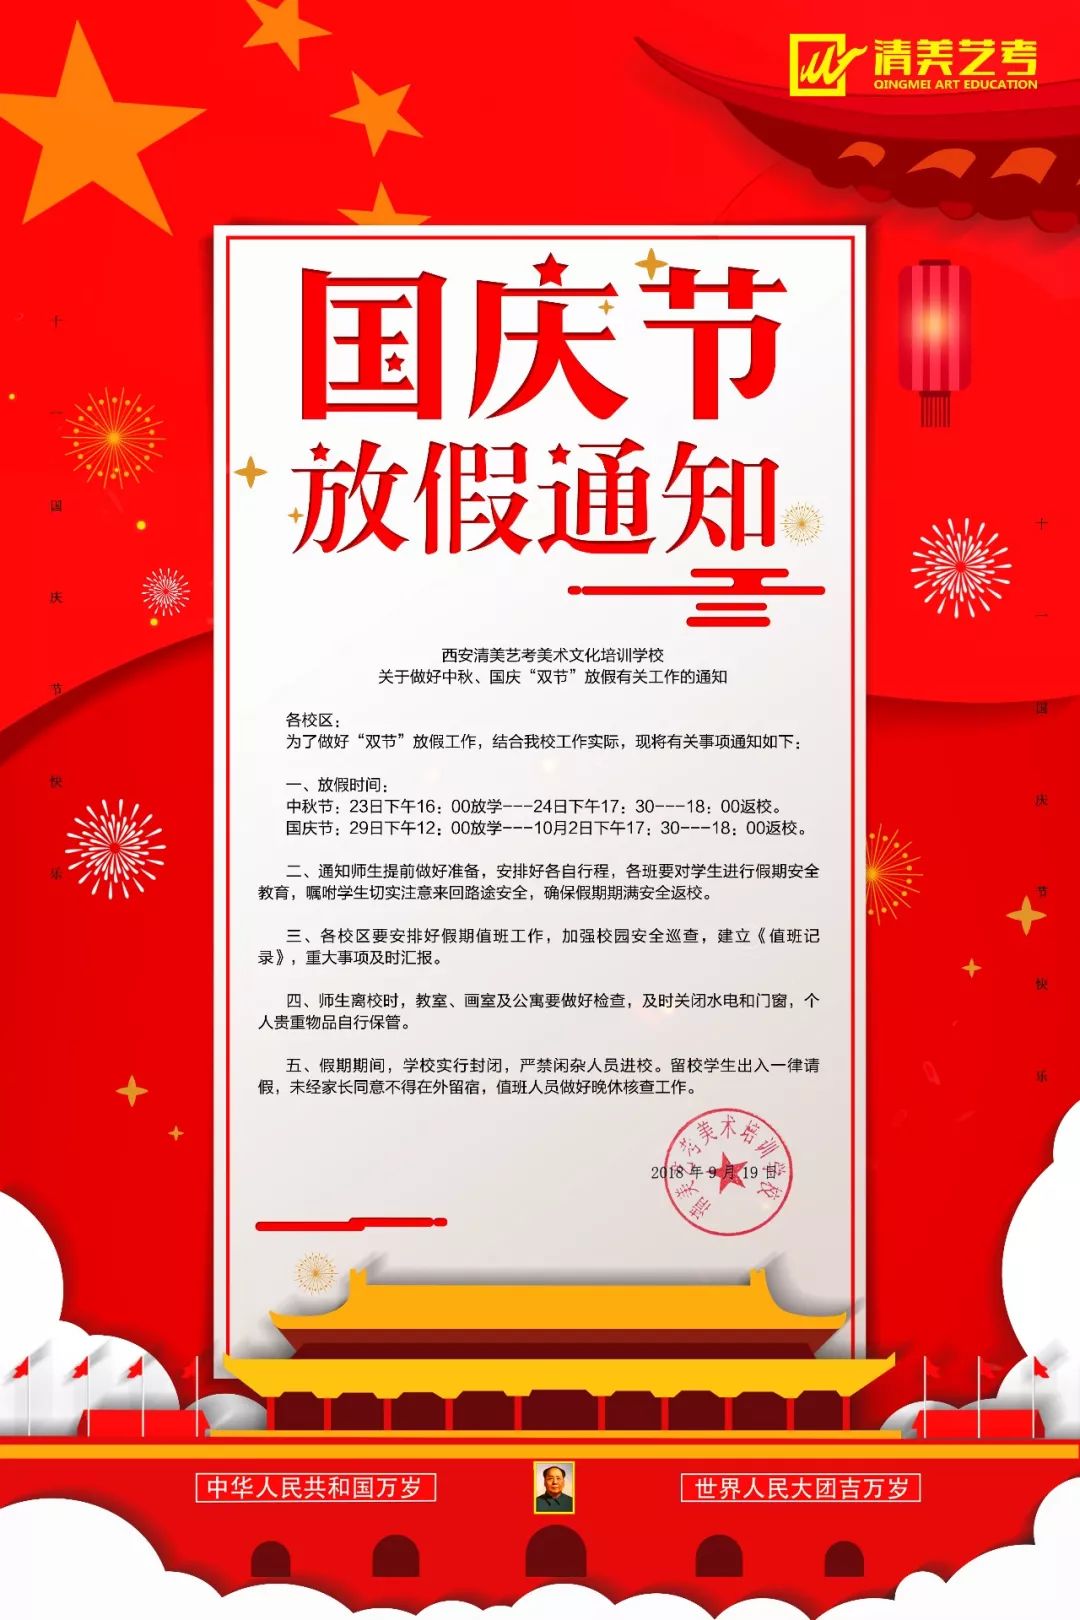 2019年十月一日是中华人民共和国成立多少周年 十月一